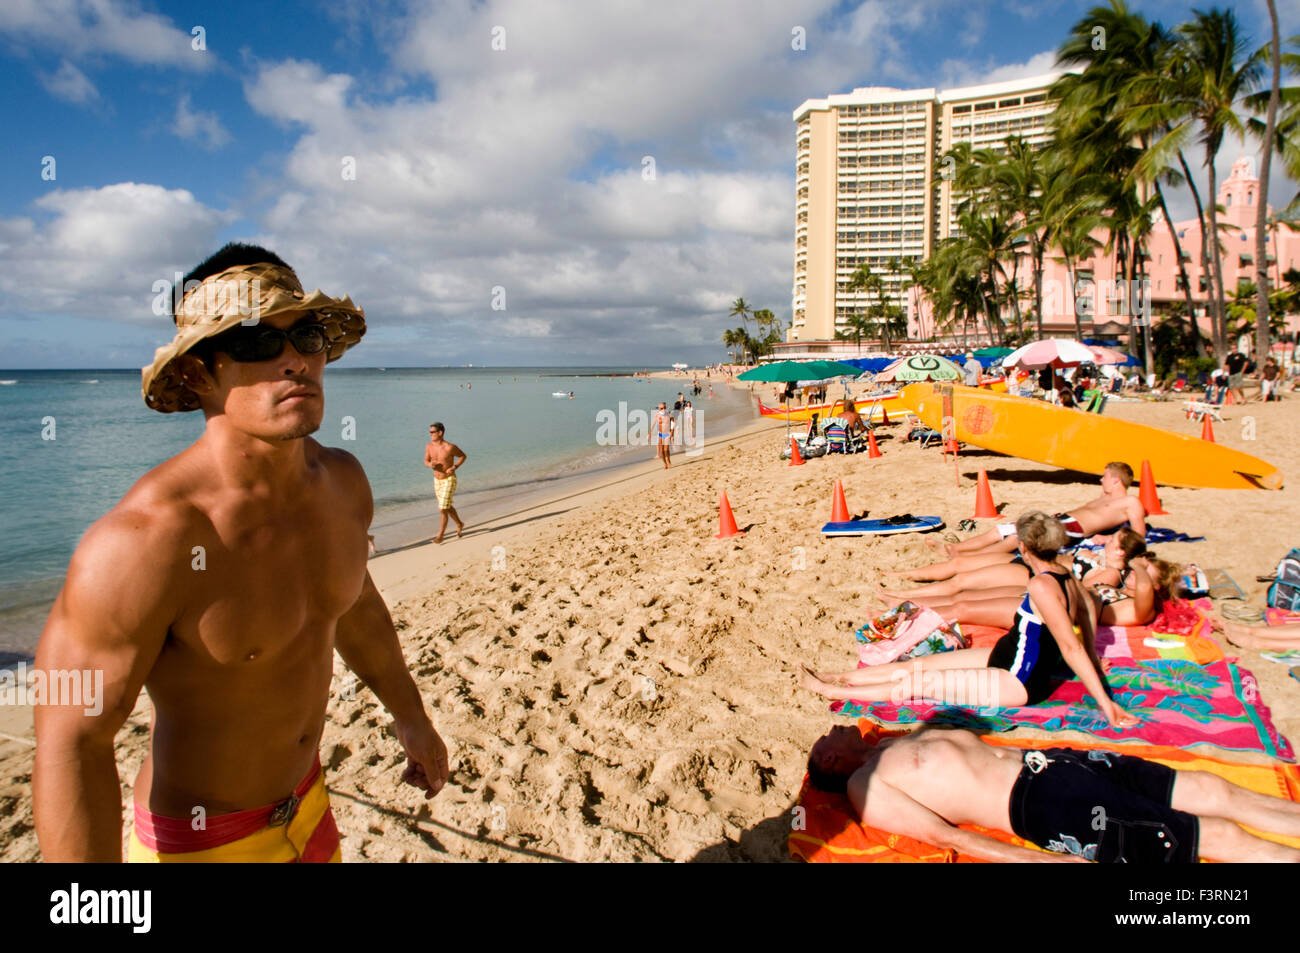 Sonnenbaden am Strand von Waikiki Strand. O' ahu. Hawaii. Waikiki ist berühmt für seine Strände und jedes Zimmer ist nur zwei oder th Stockfoto